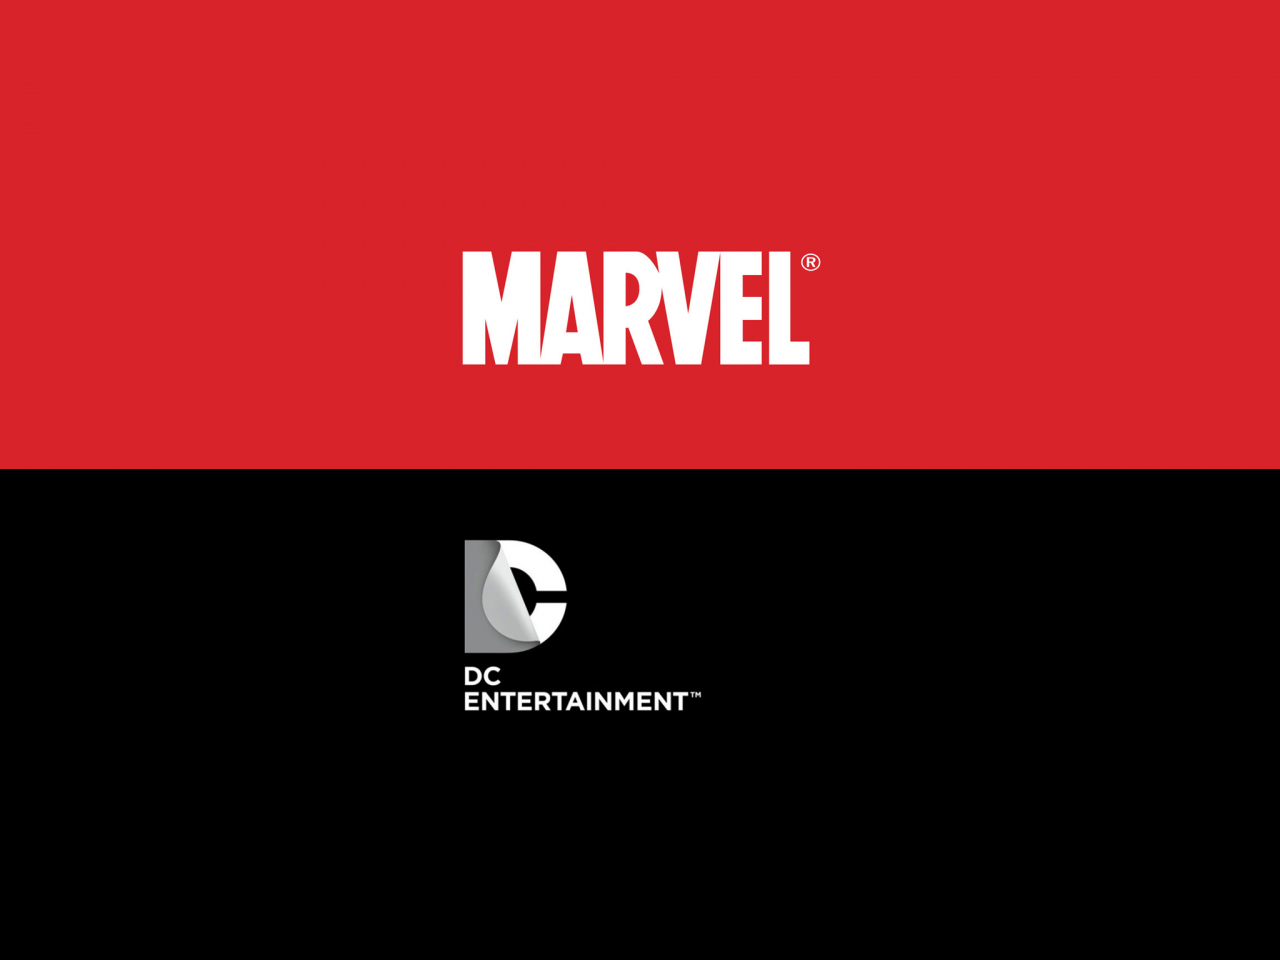 De belangrijkste verschillen tussen Marvel en DC